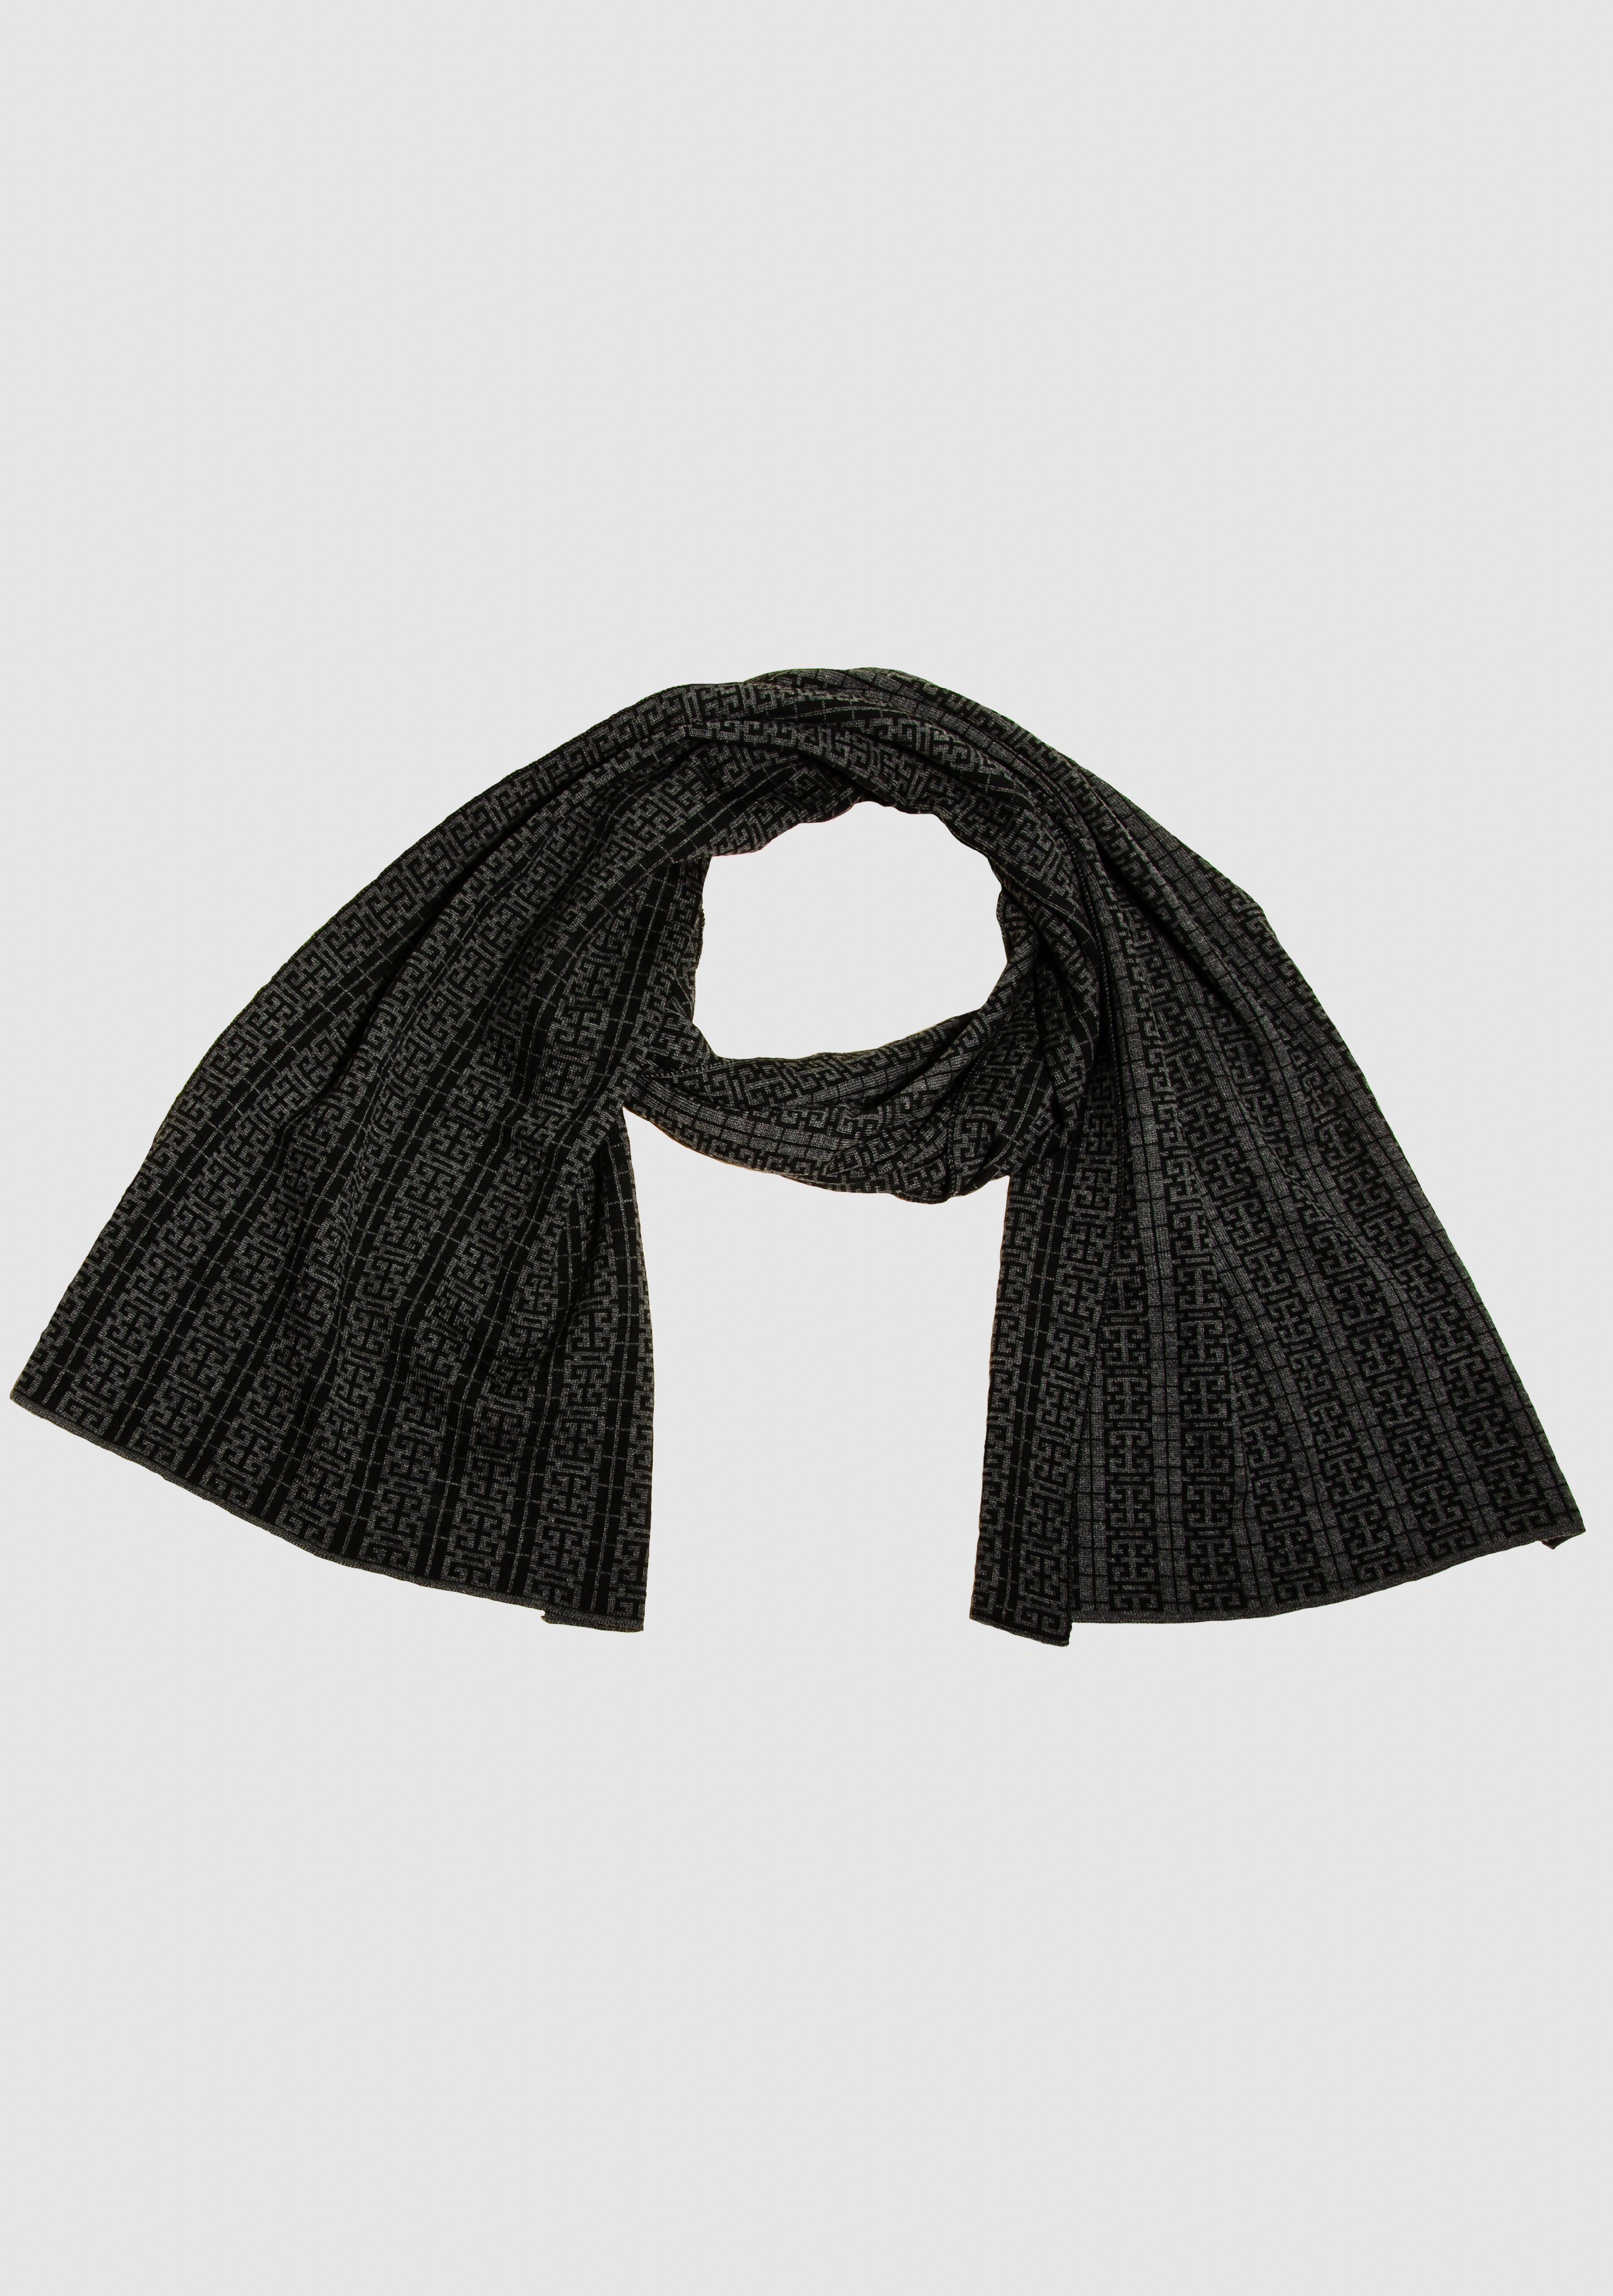 Strickschal in LANARTO Peking Merino extrasoft slow Schal Farben anthrazit_schwarz schönen fashion aus 100%